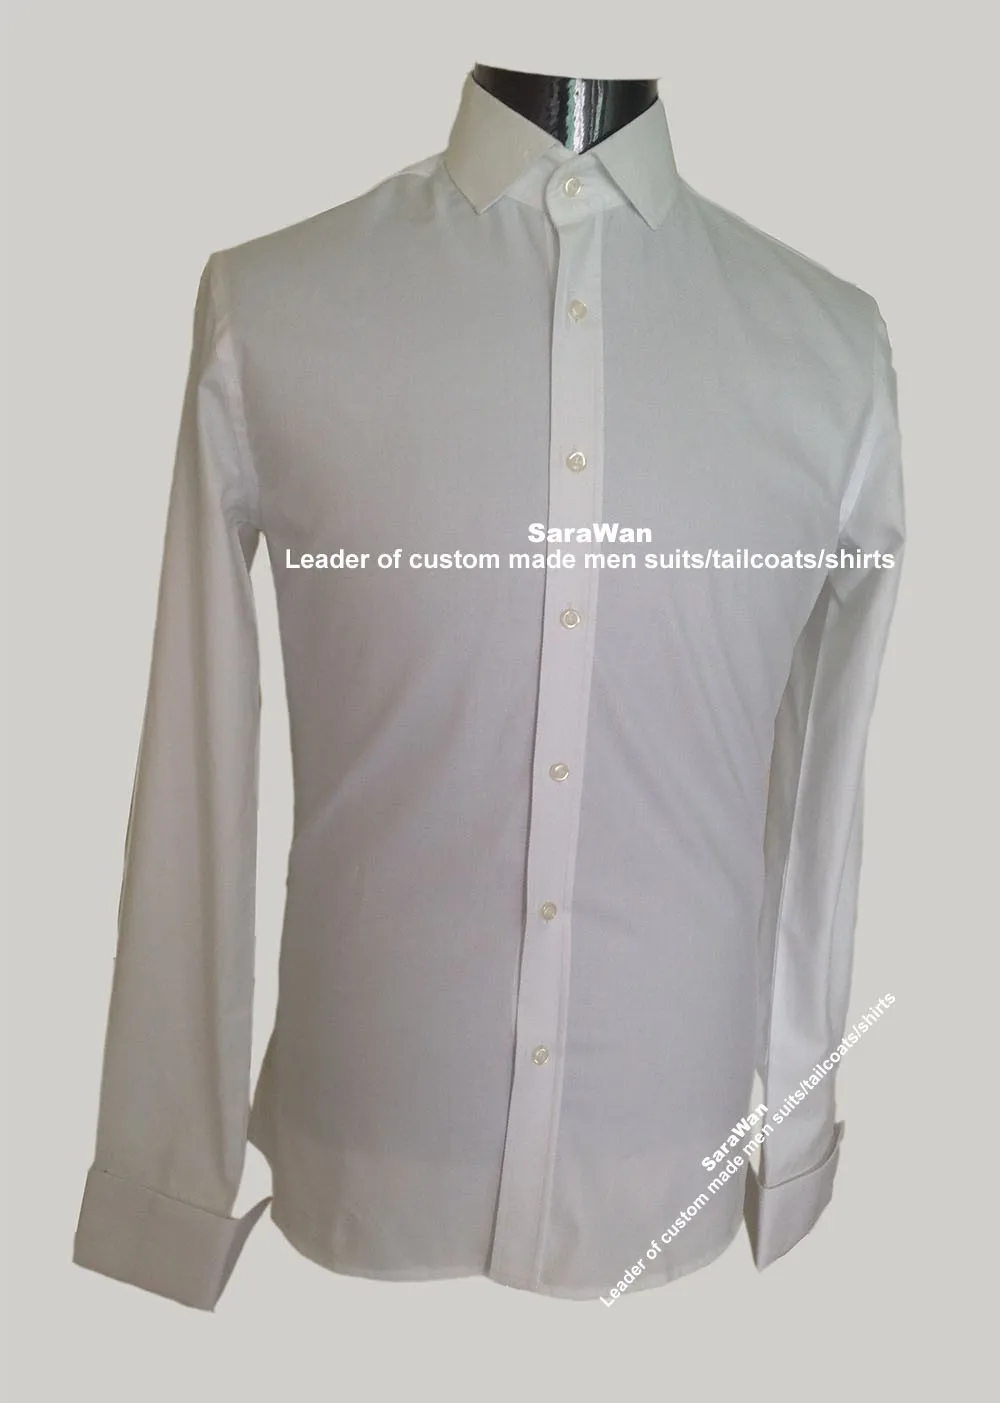 Белые рубашки для мужчин на заказ, белая рубашка с длинным рукавом для мужчин, хлопковая рубашка с 12 узорами, приталенная мужская рубашка